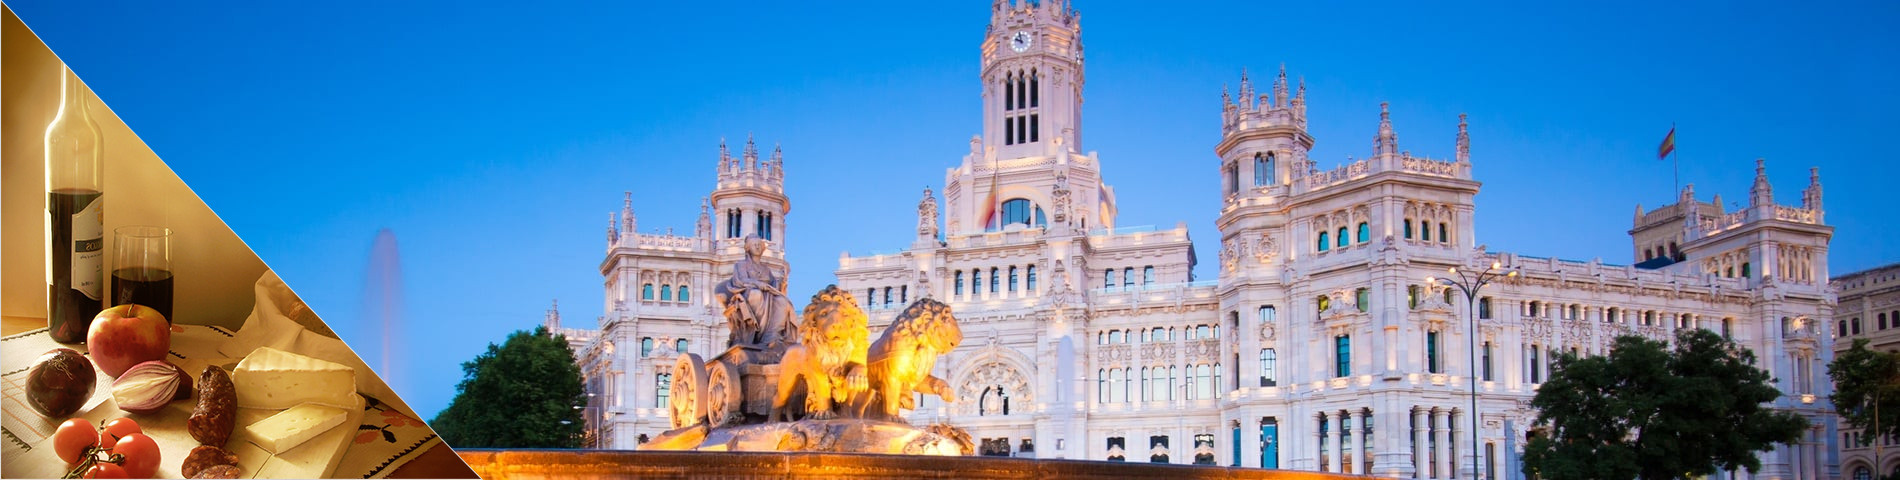 Madrid - Espanja & kulttuuri